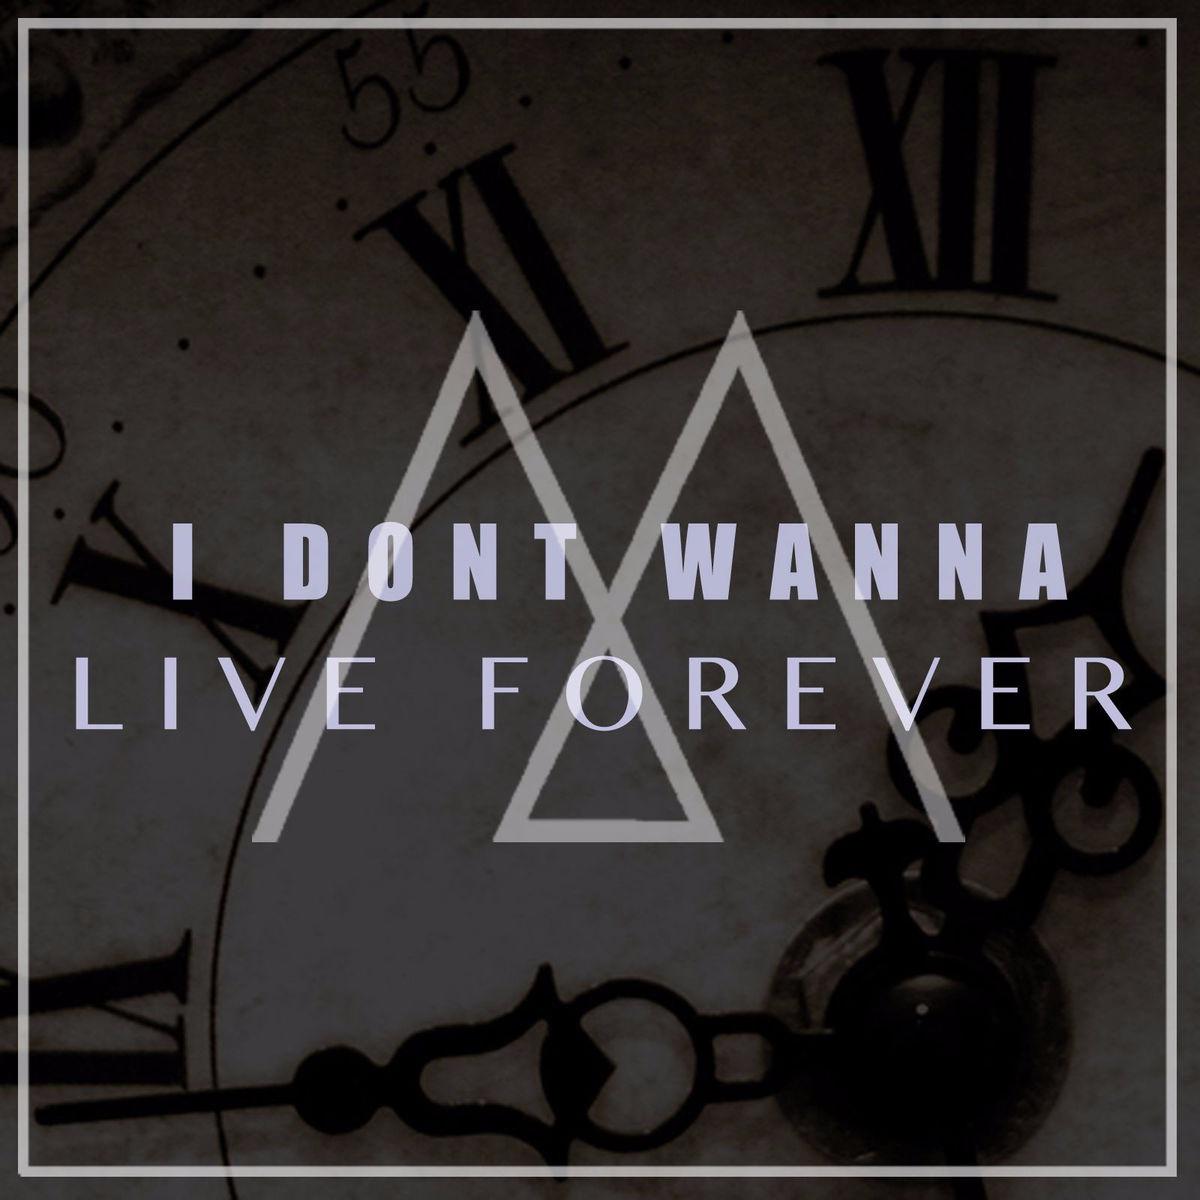 Live forever текст. Песня i wanna Live. I don't wanna Live обложка. Обложка песни Live Forever. Live Forever text.